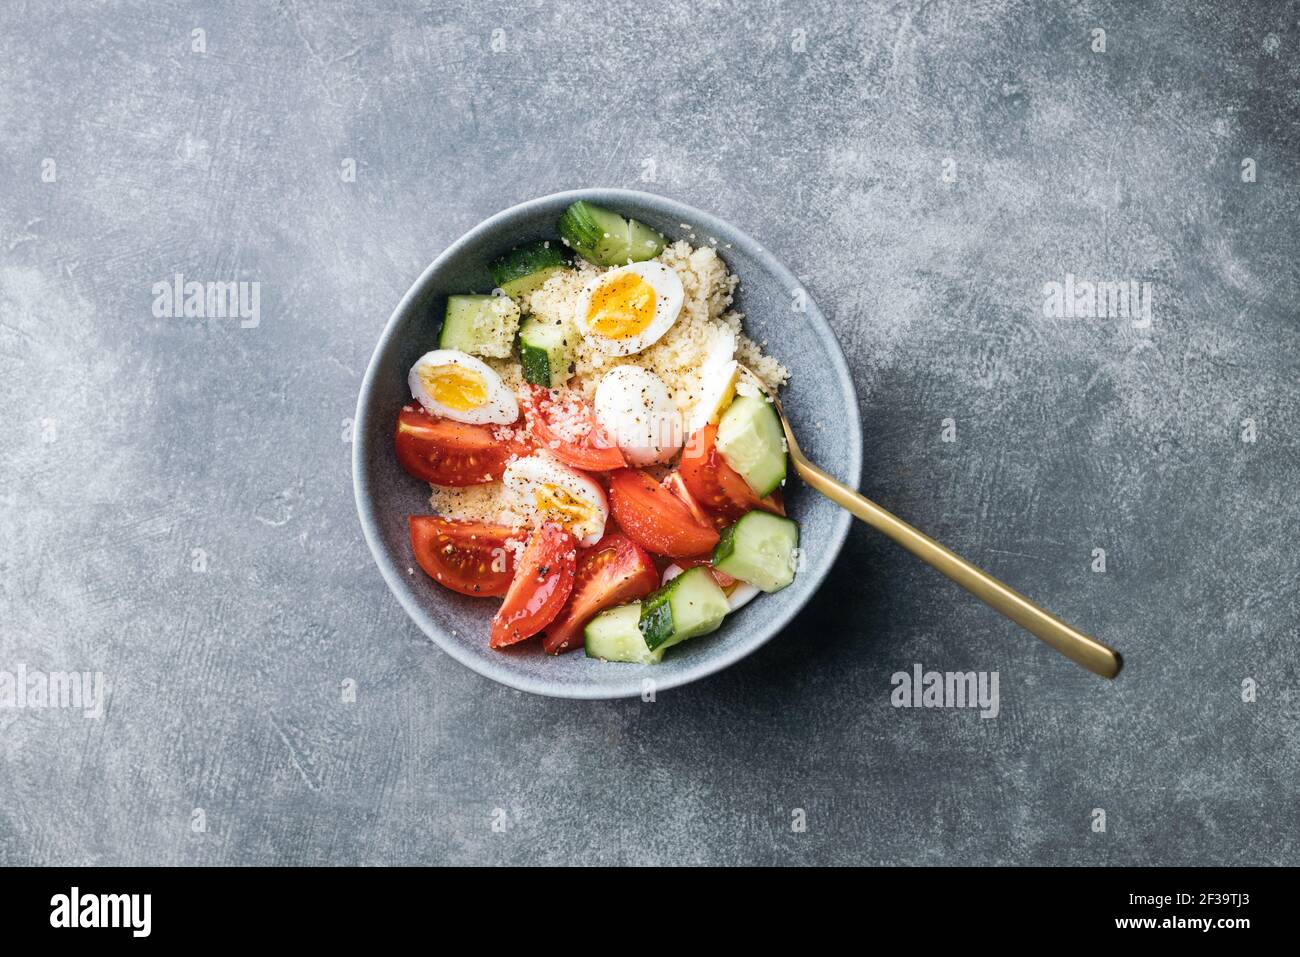 Ciotola per insalata di cous cous vegano con cetriolo, pomodori ciliegini e uova di quaglia su un tavolo di pietra. Vista dall'alto. Insalata semplice con ingredienti minimi. Foto Stock